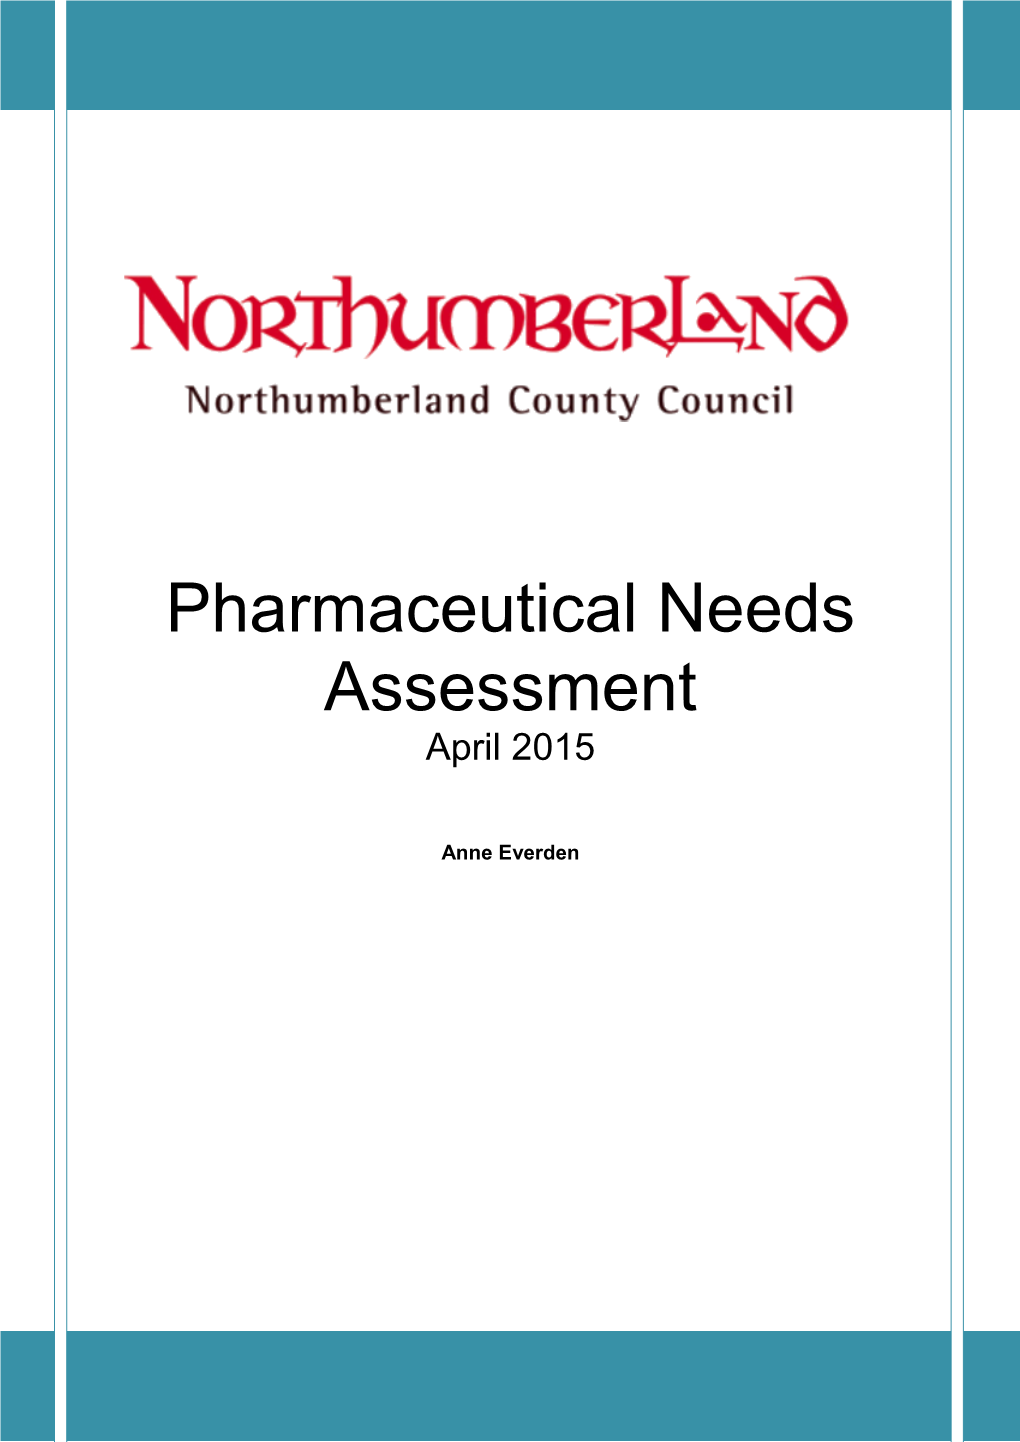 Pharmaceutical Needs Assessment April 2015